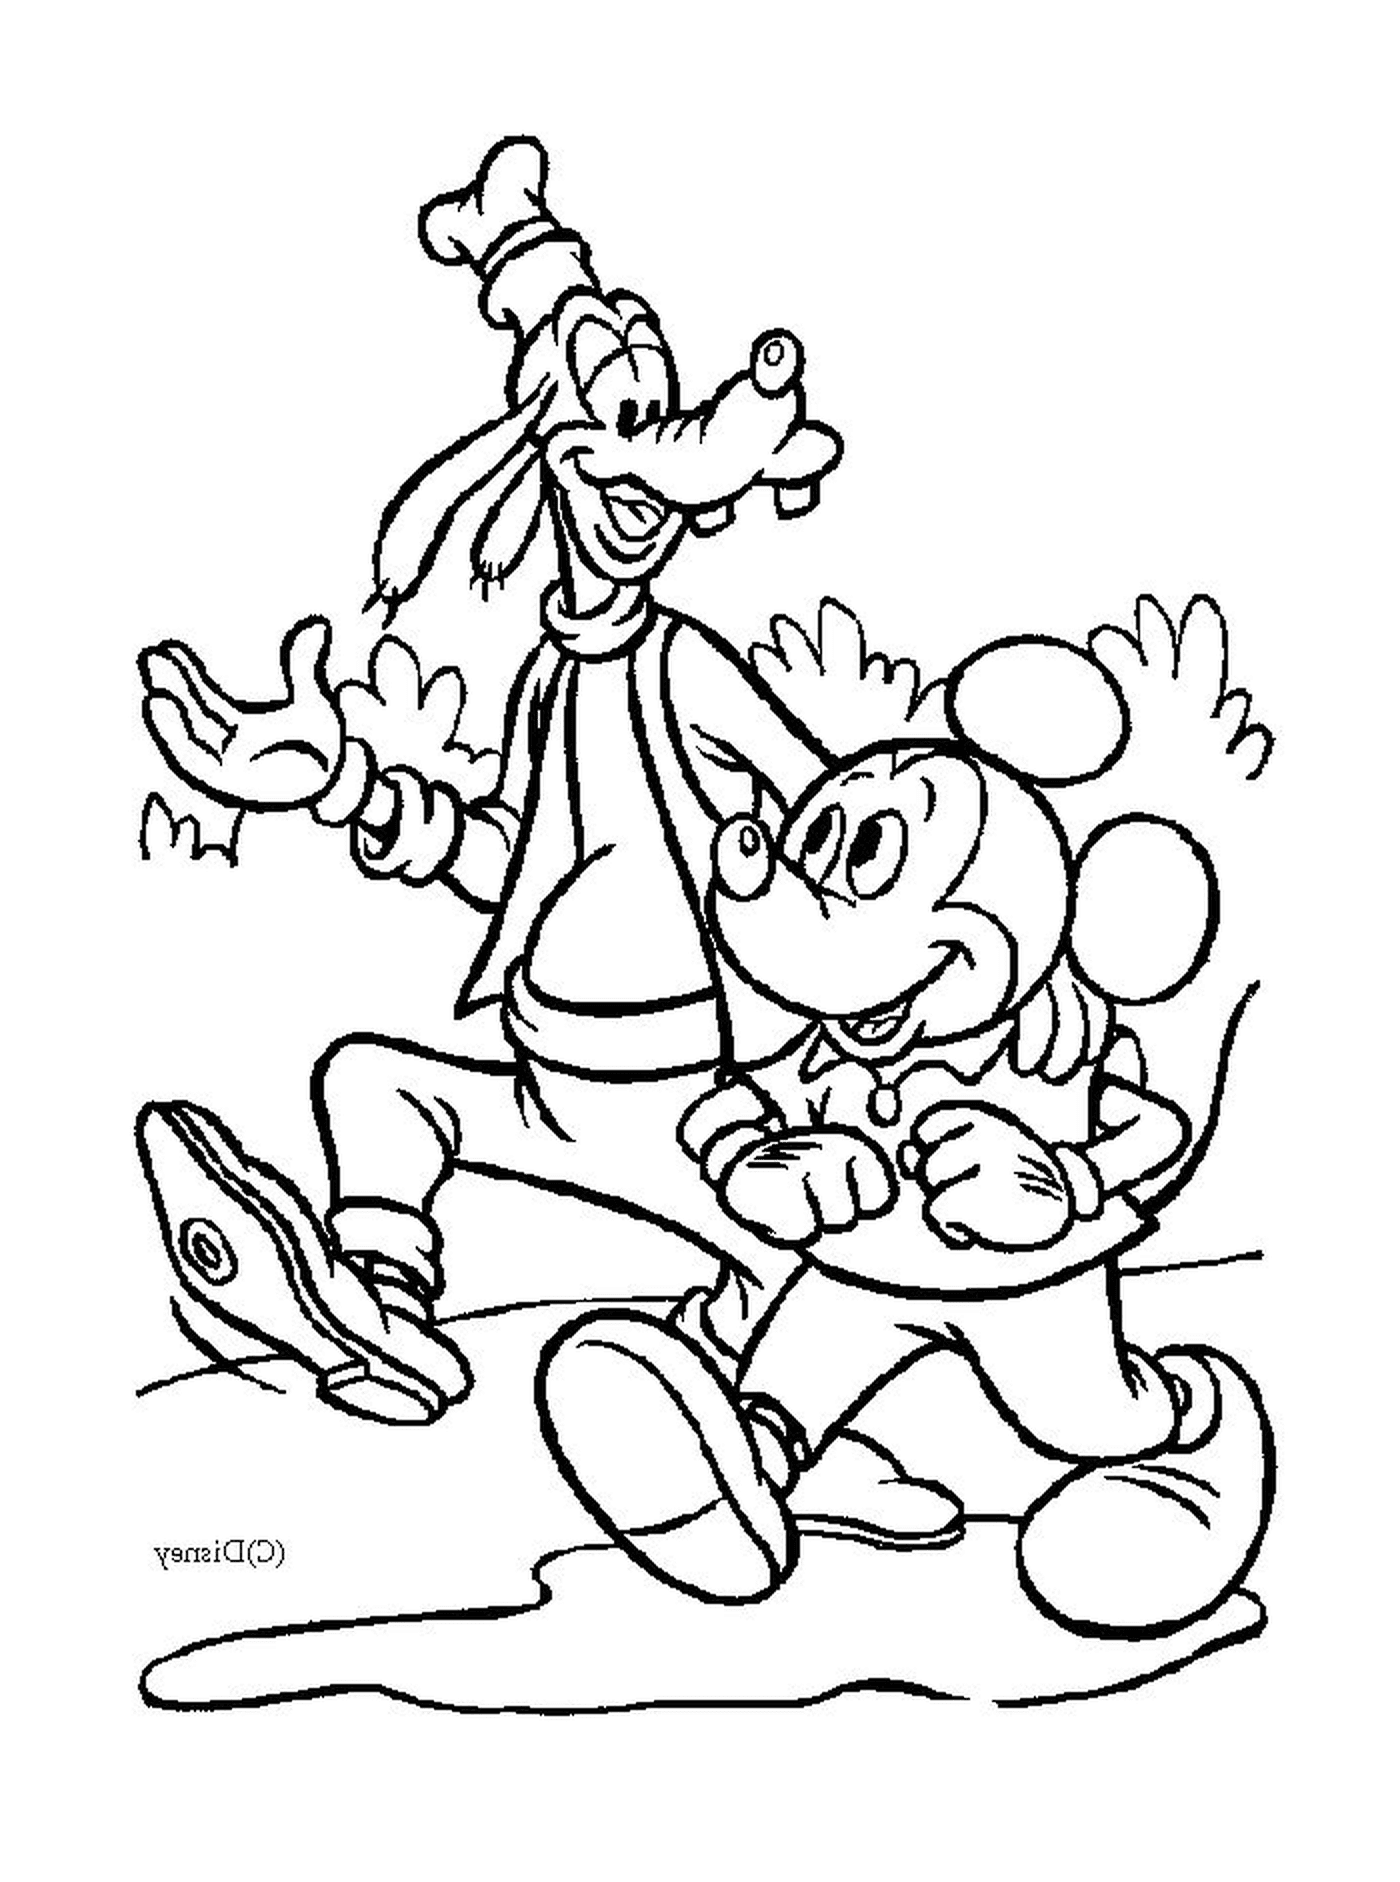 coloriage Mickey et son ami Dingo se promenent